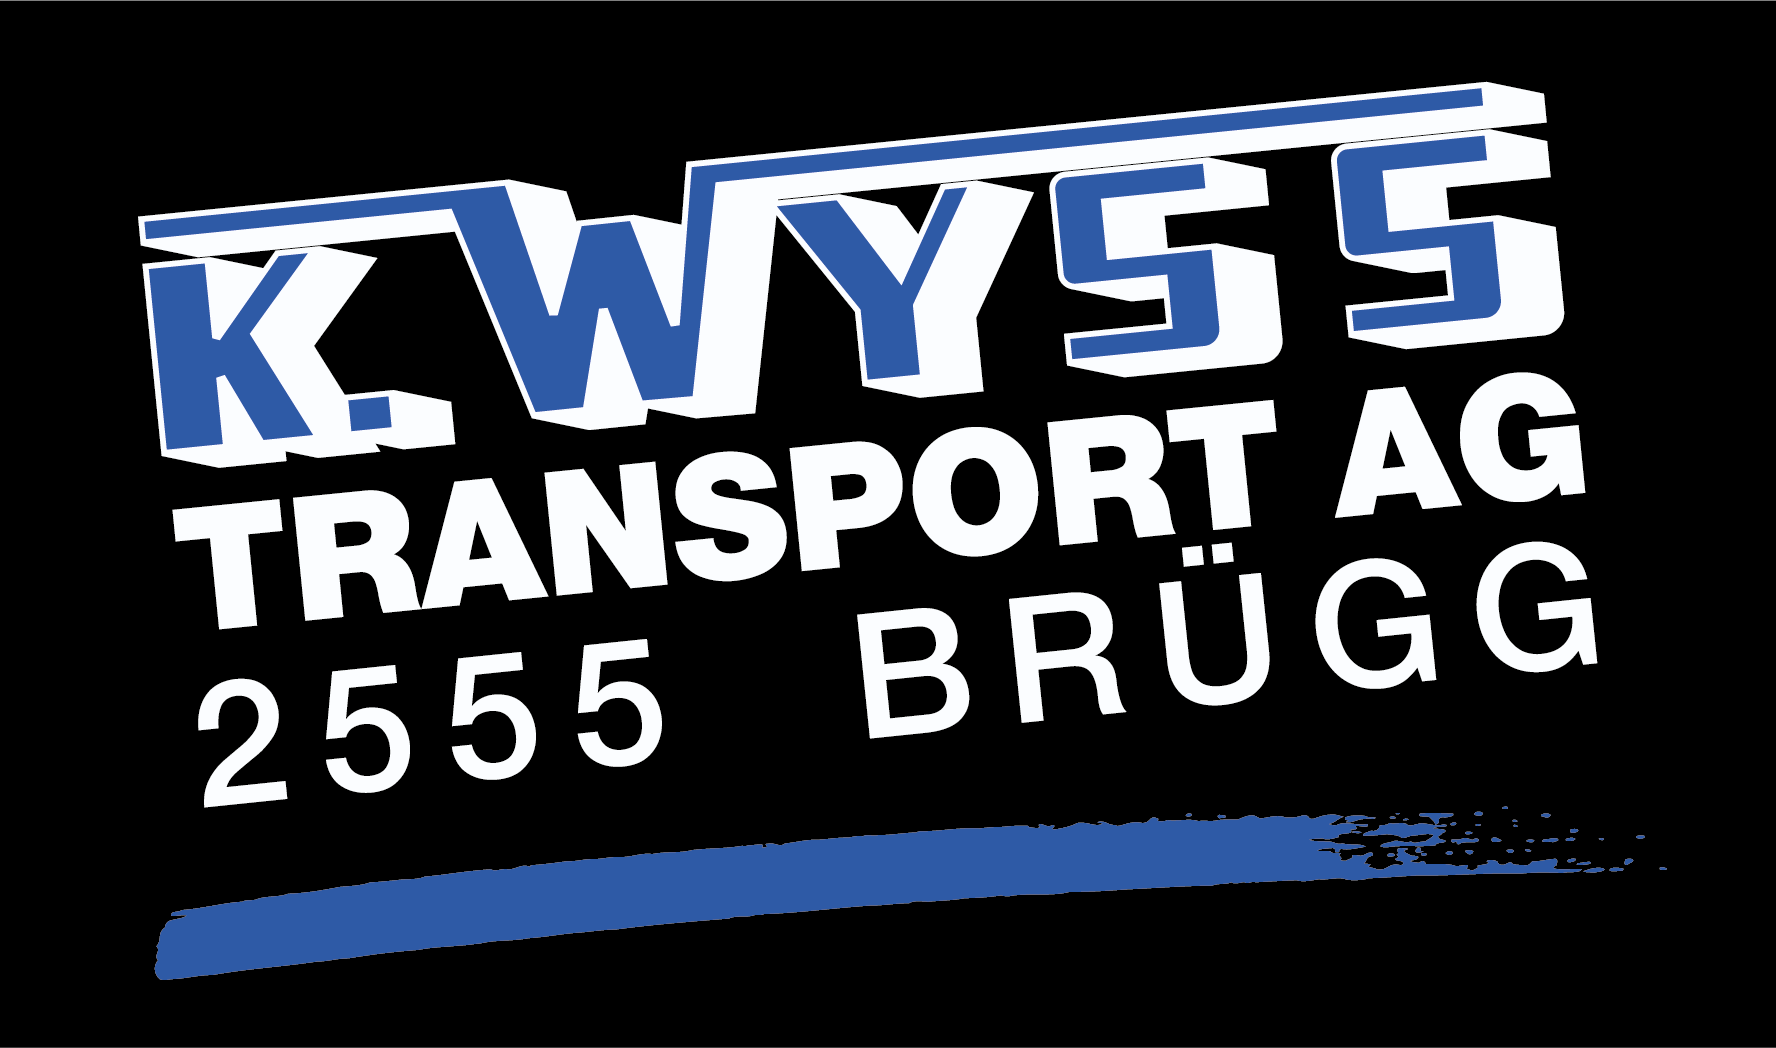 K. Wyss Transport AG